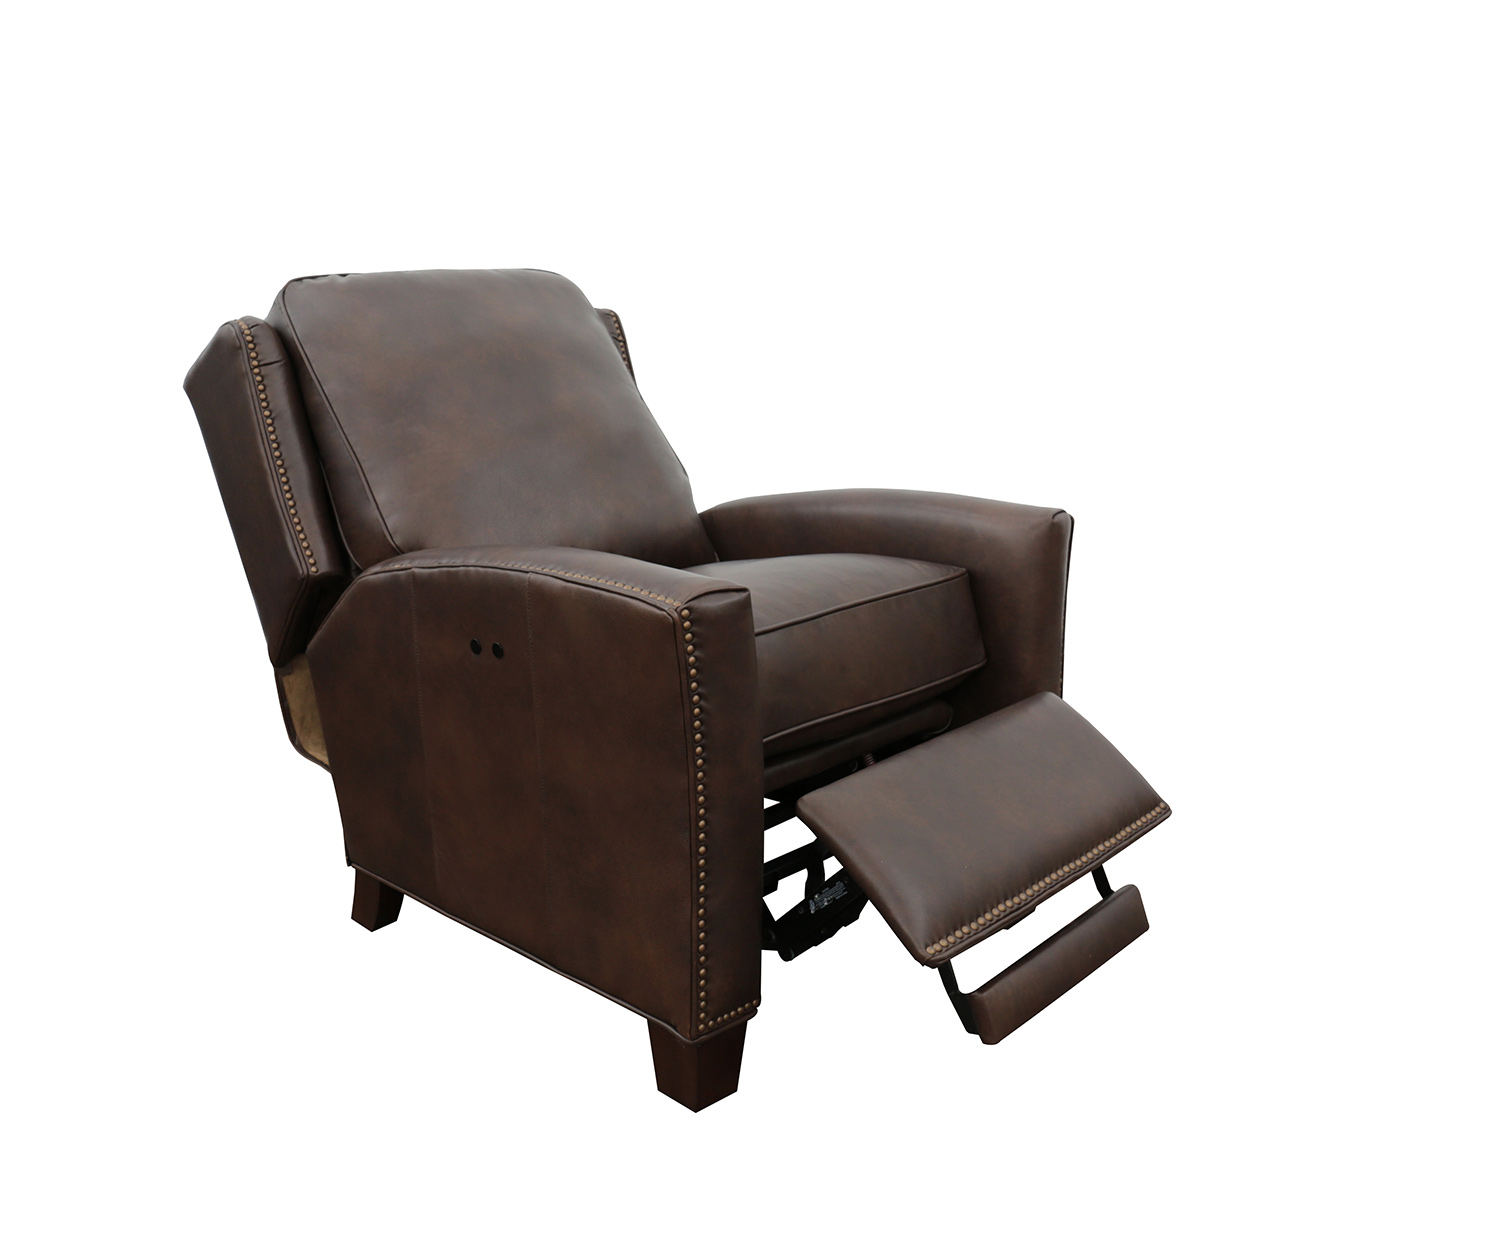 Barcalounger Woodbridge Power Recliner Chair - Ashford Walnut/All Leather